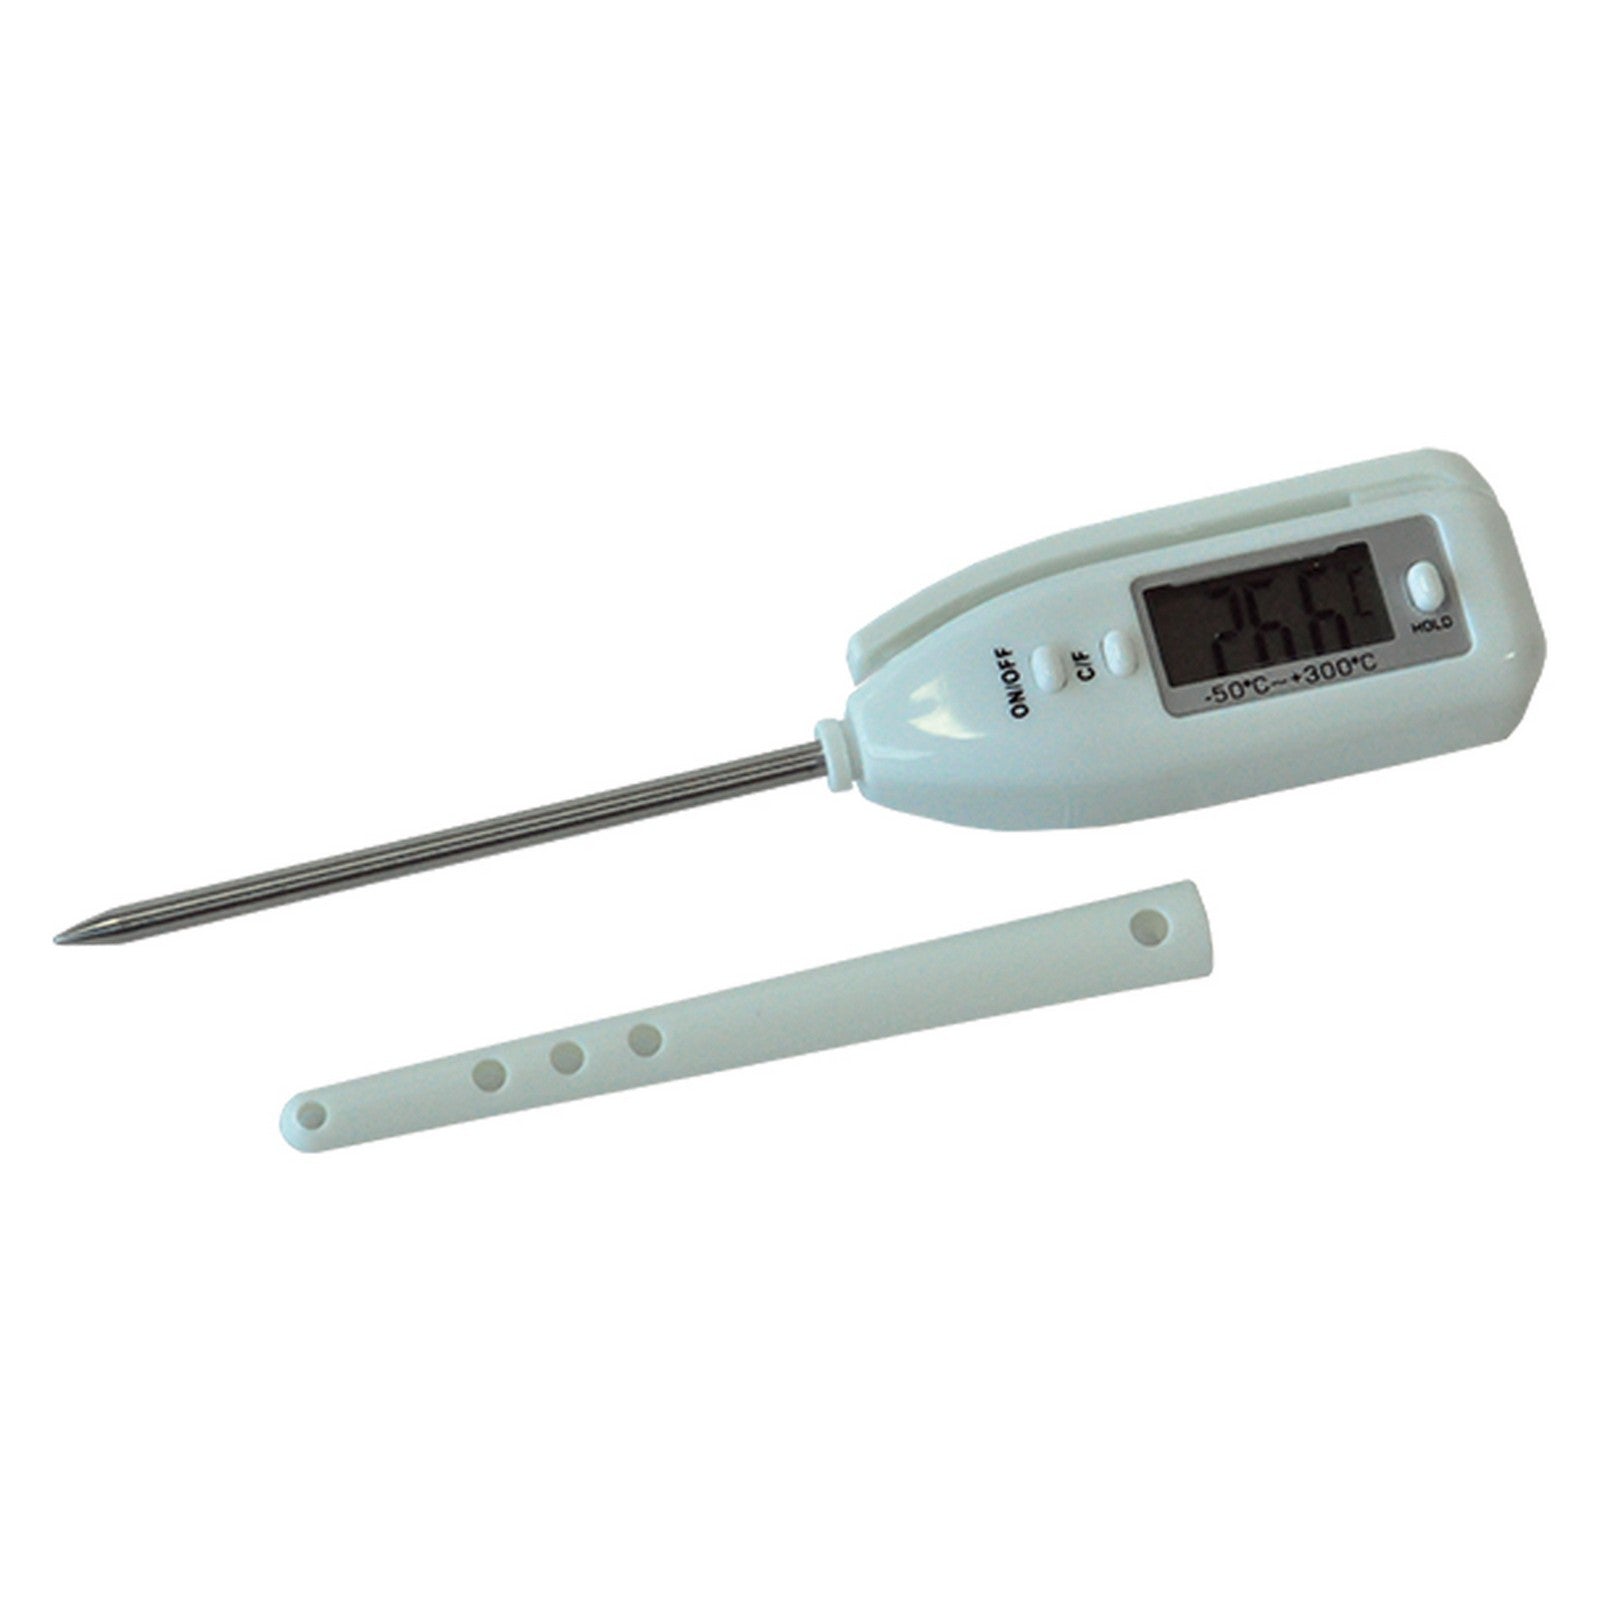 termometro digitale da cucina -50Ã¢Â°/+300Ã¢Â°c cod:ferx.804654nlm